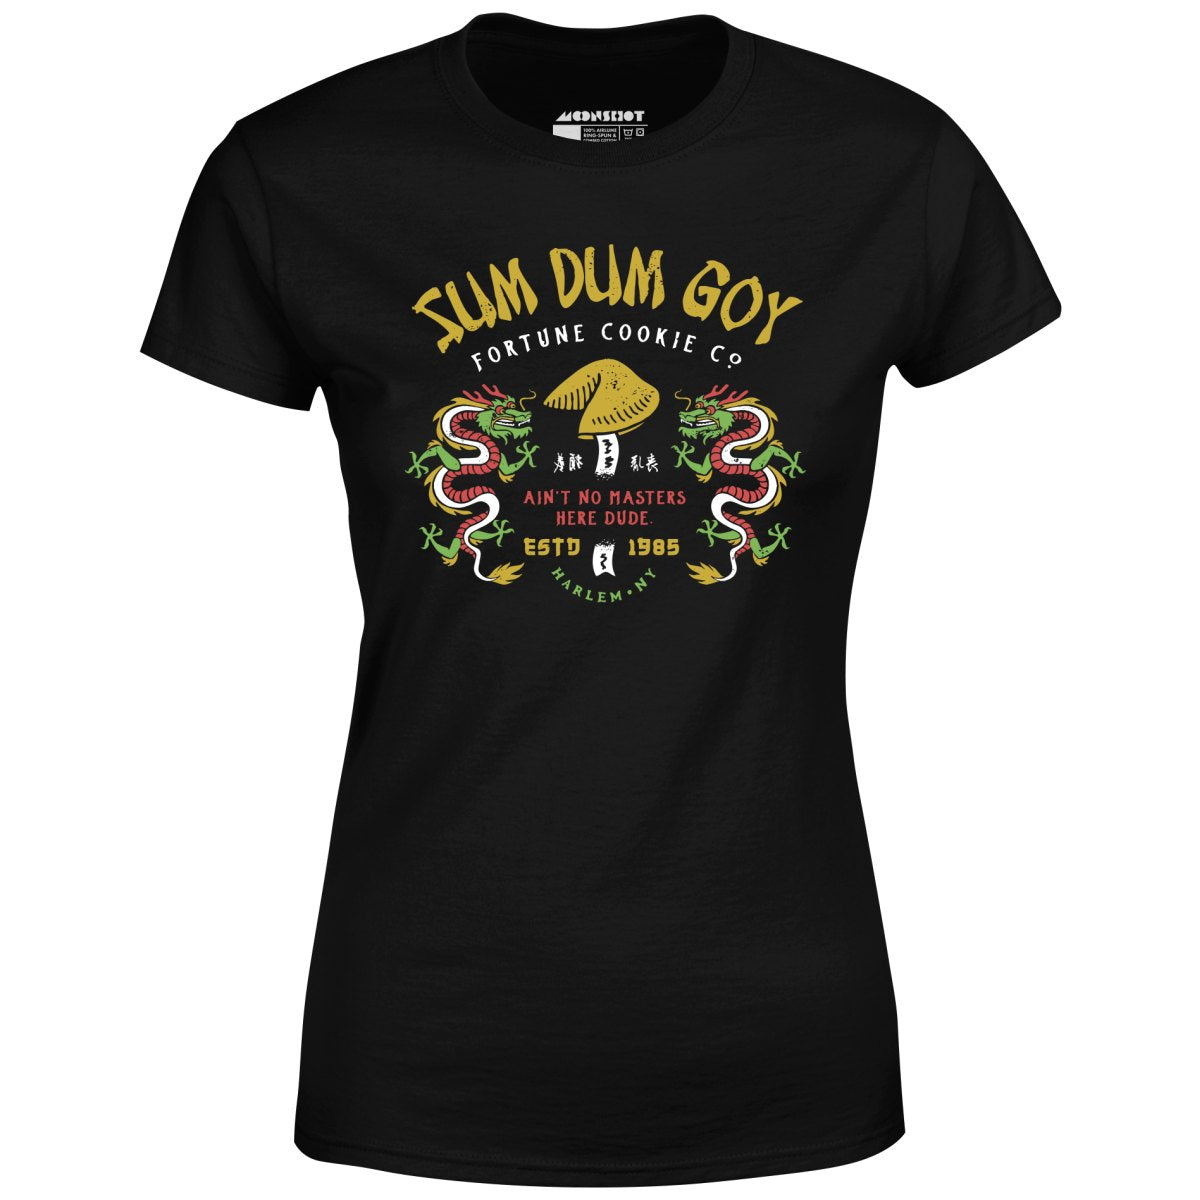 Sum Dum Goy Fortune Cookie Co. - Last Dragon - Women's T-Shirt